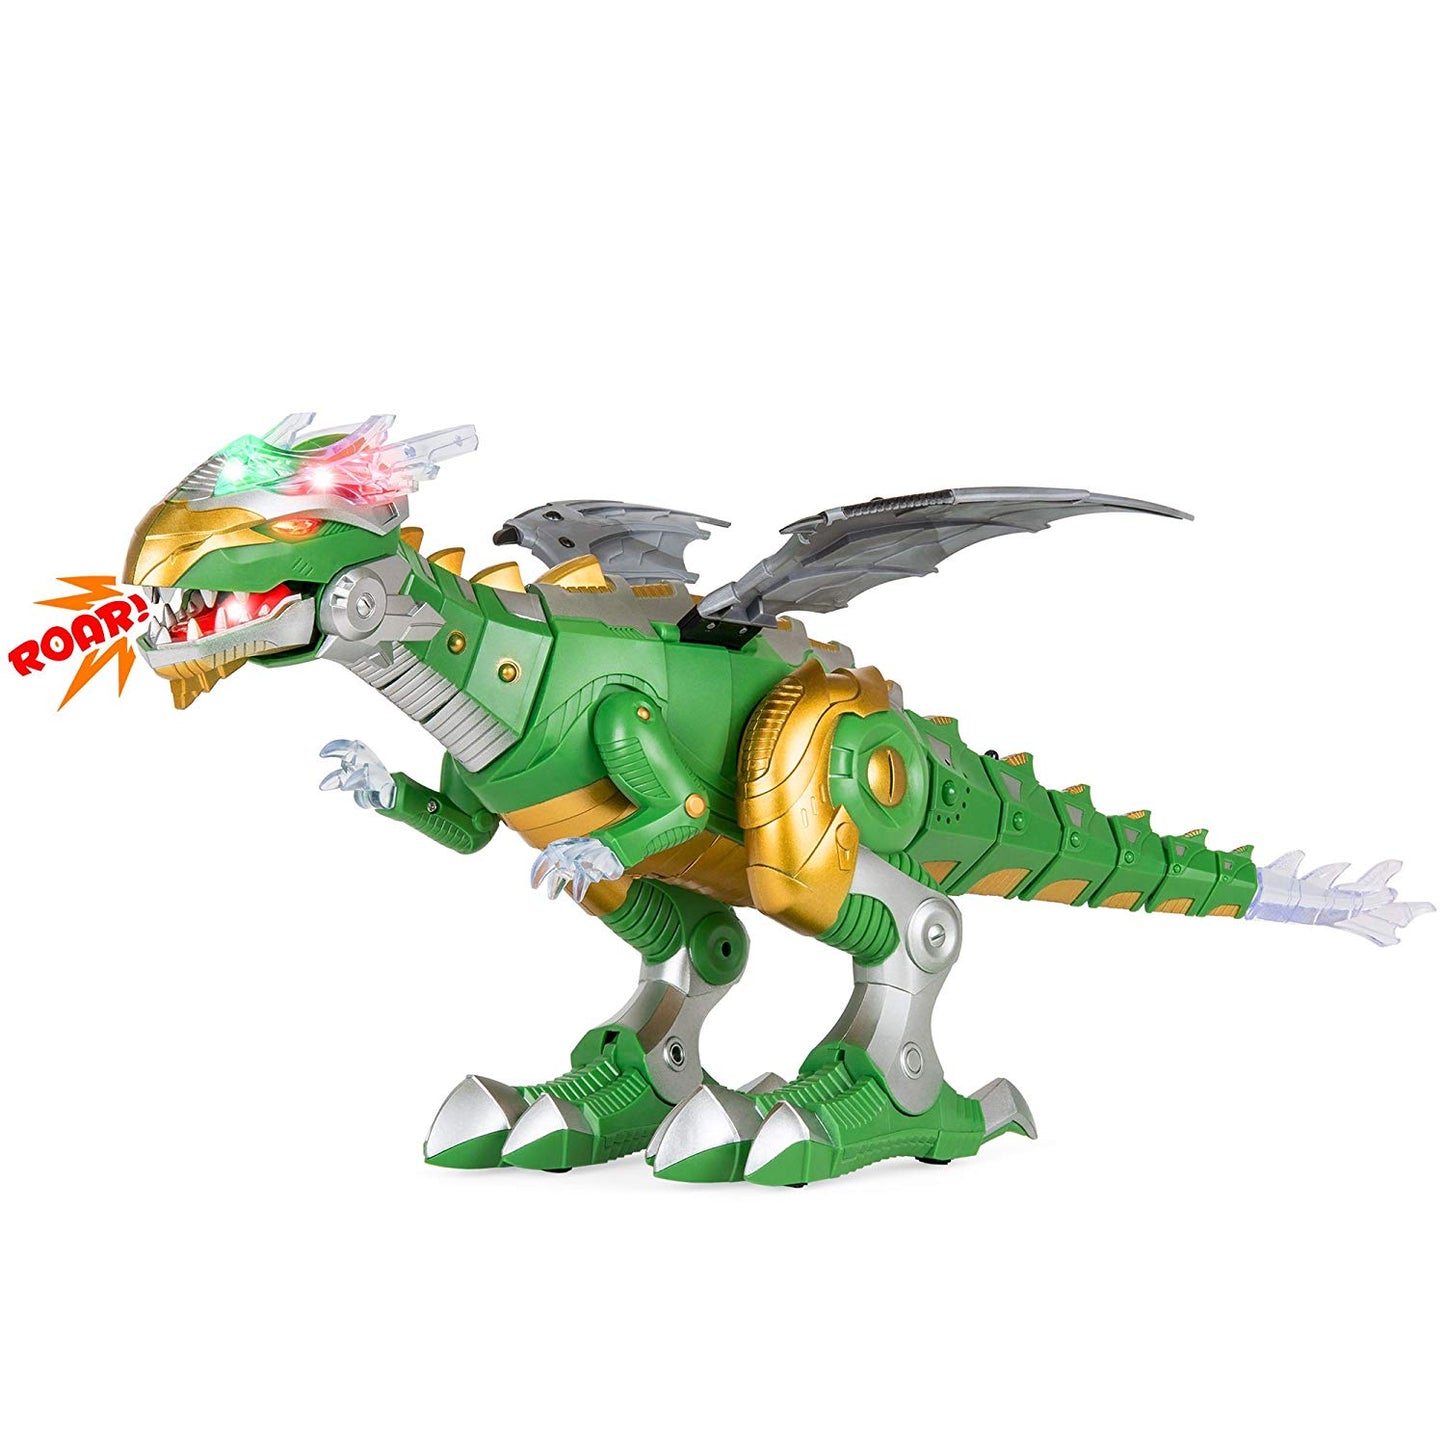 Kids Walking Dragon Dinosaur Robot Toy w/ Lights, Moving Wings, Sound - Green